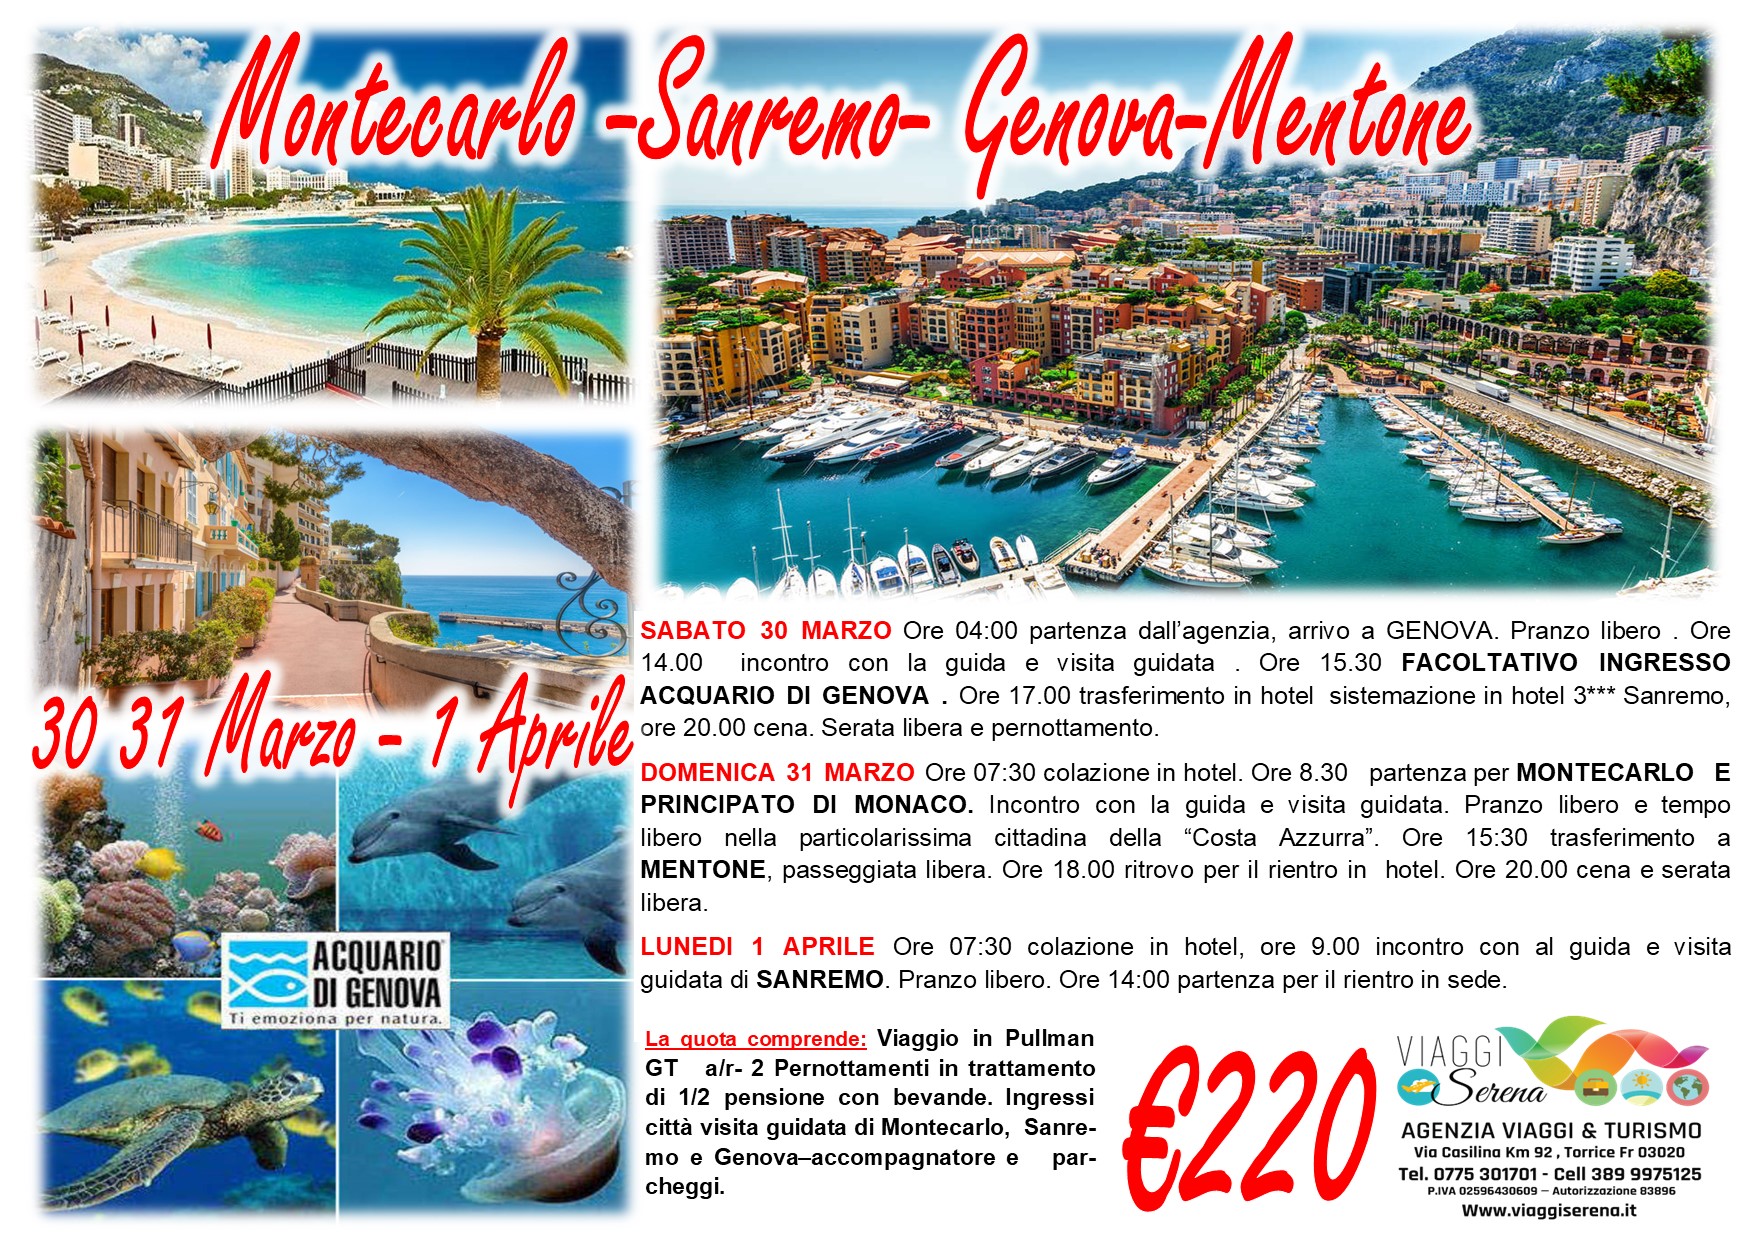 Viaggi di gruppo: Montecarlo, Sanremo, Genova & Mentone 30-31 Marzo & 1 Aprile €220